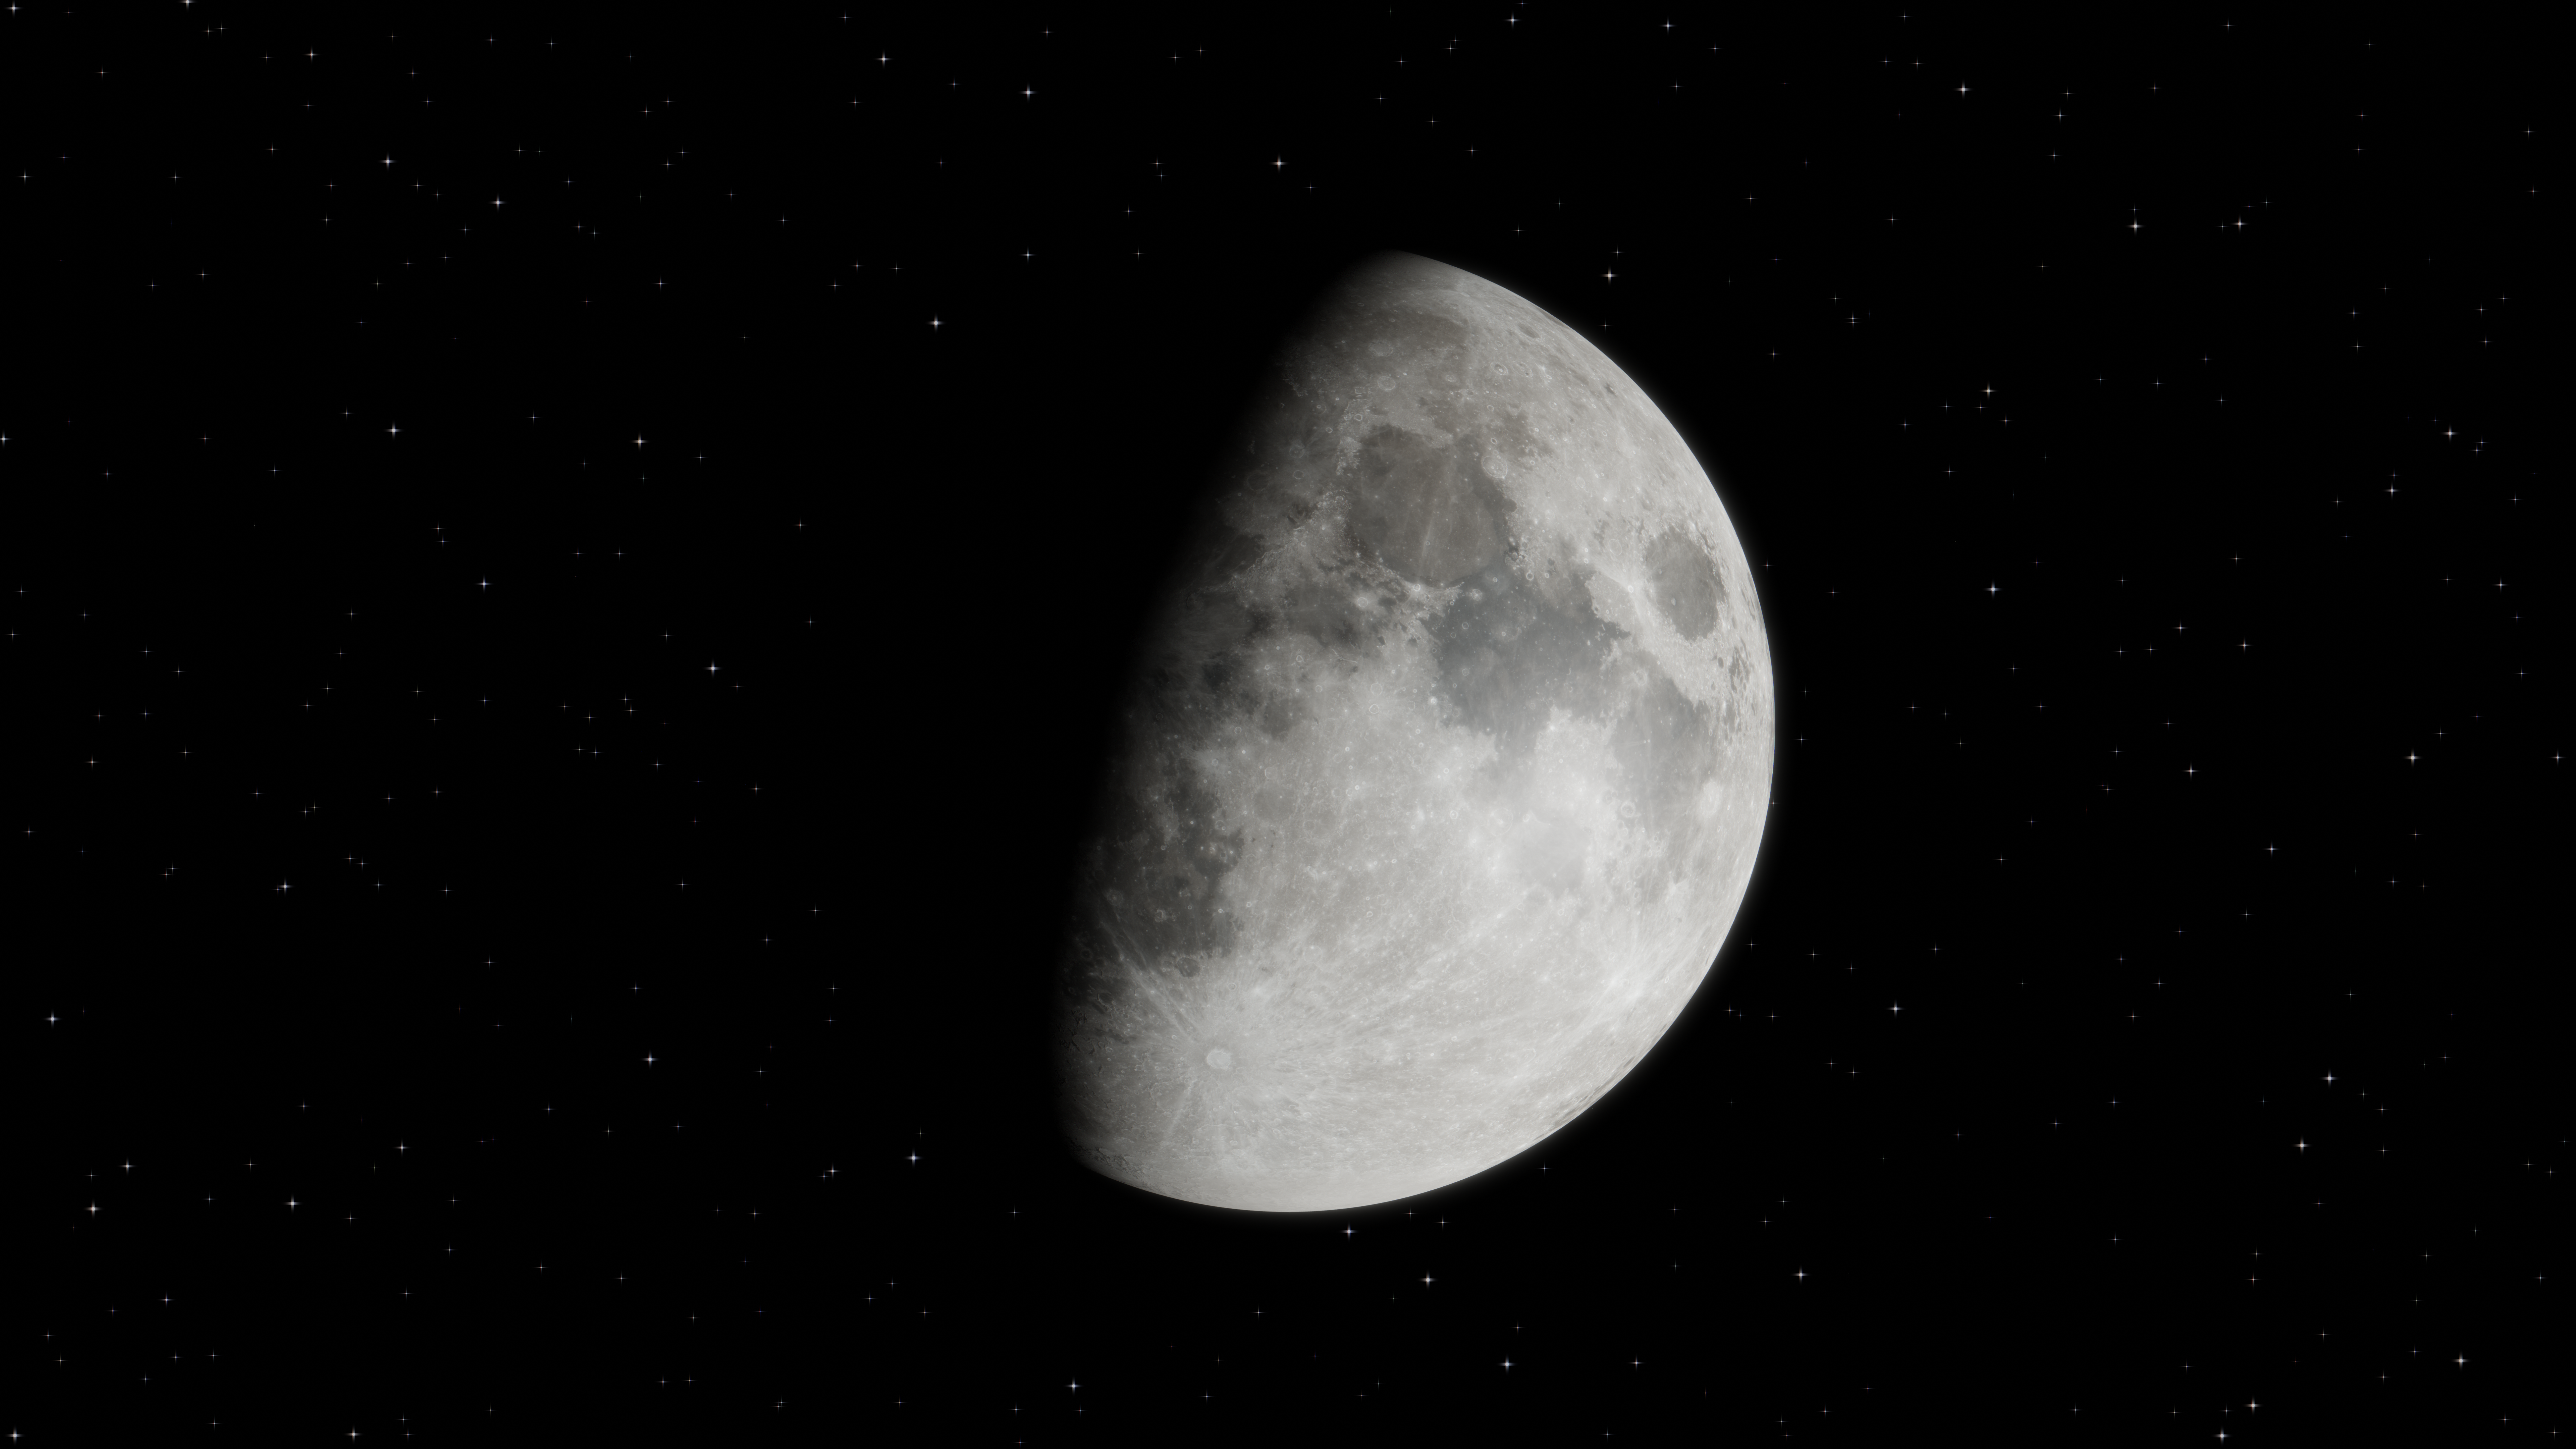 General 7680x4320 Moon night stars shadow sky space digital art Blender